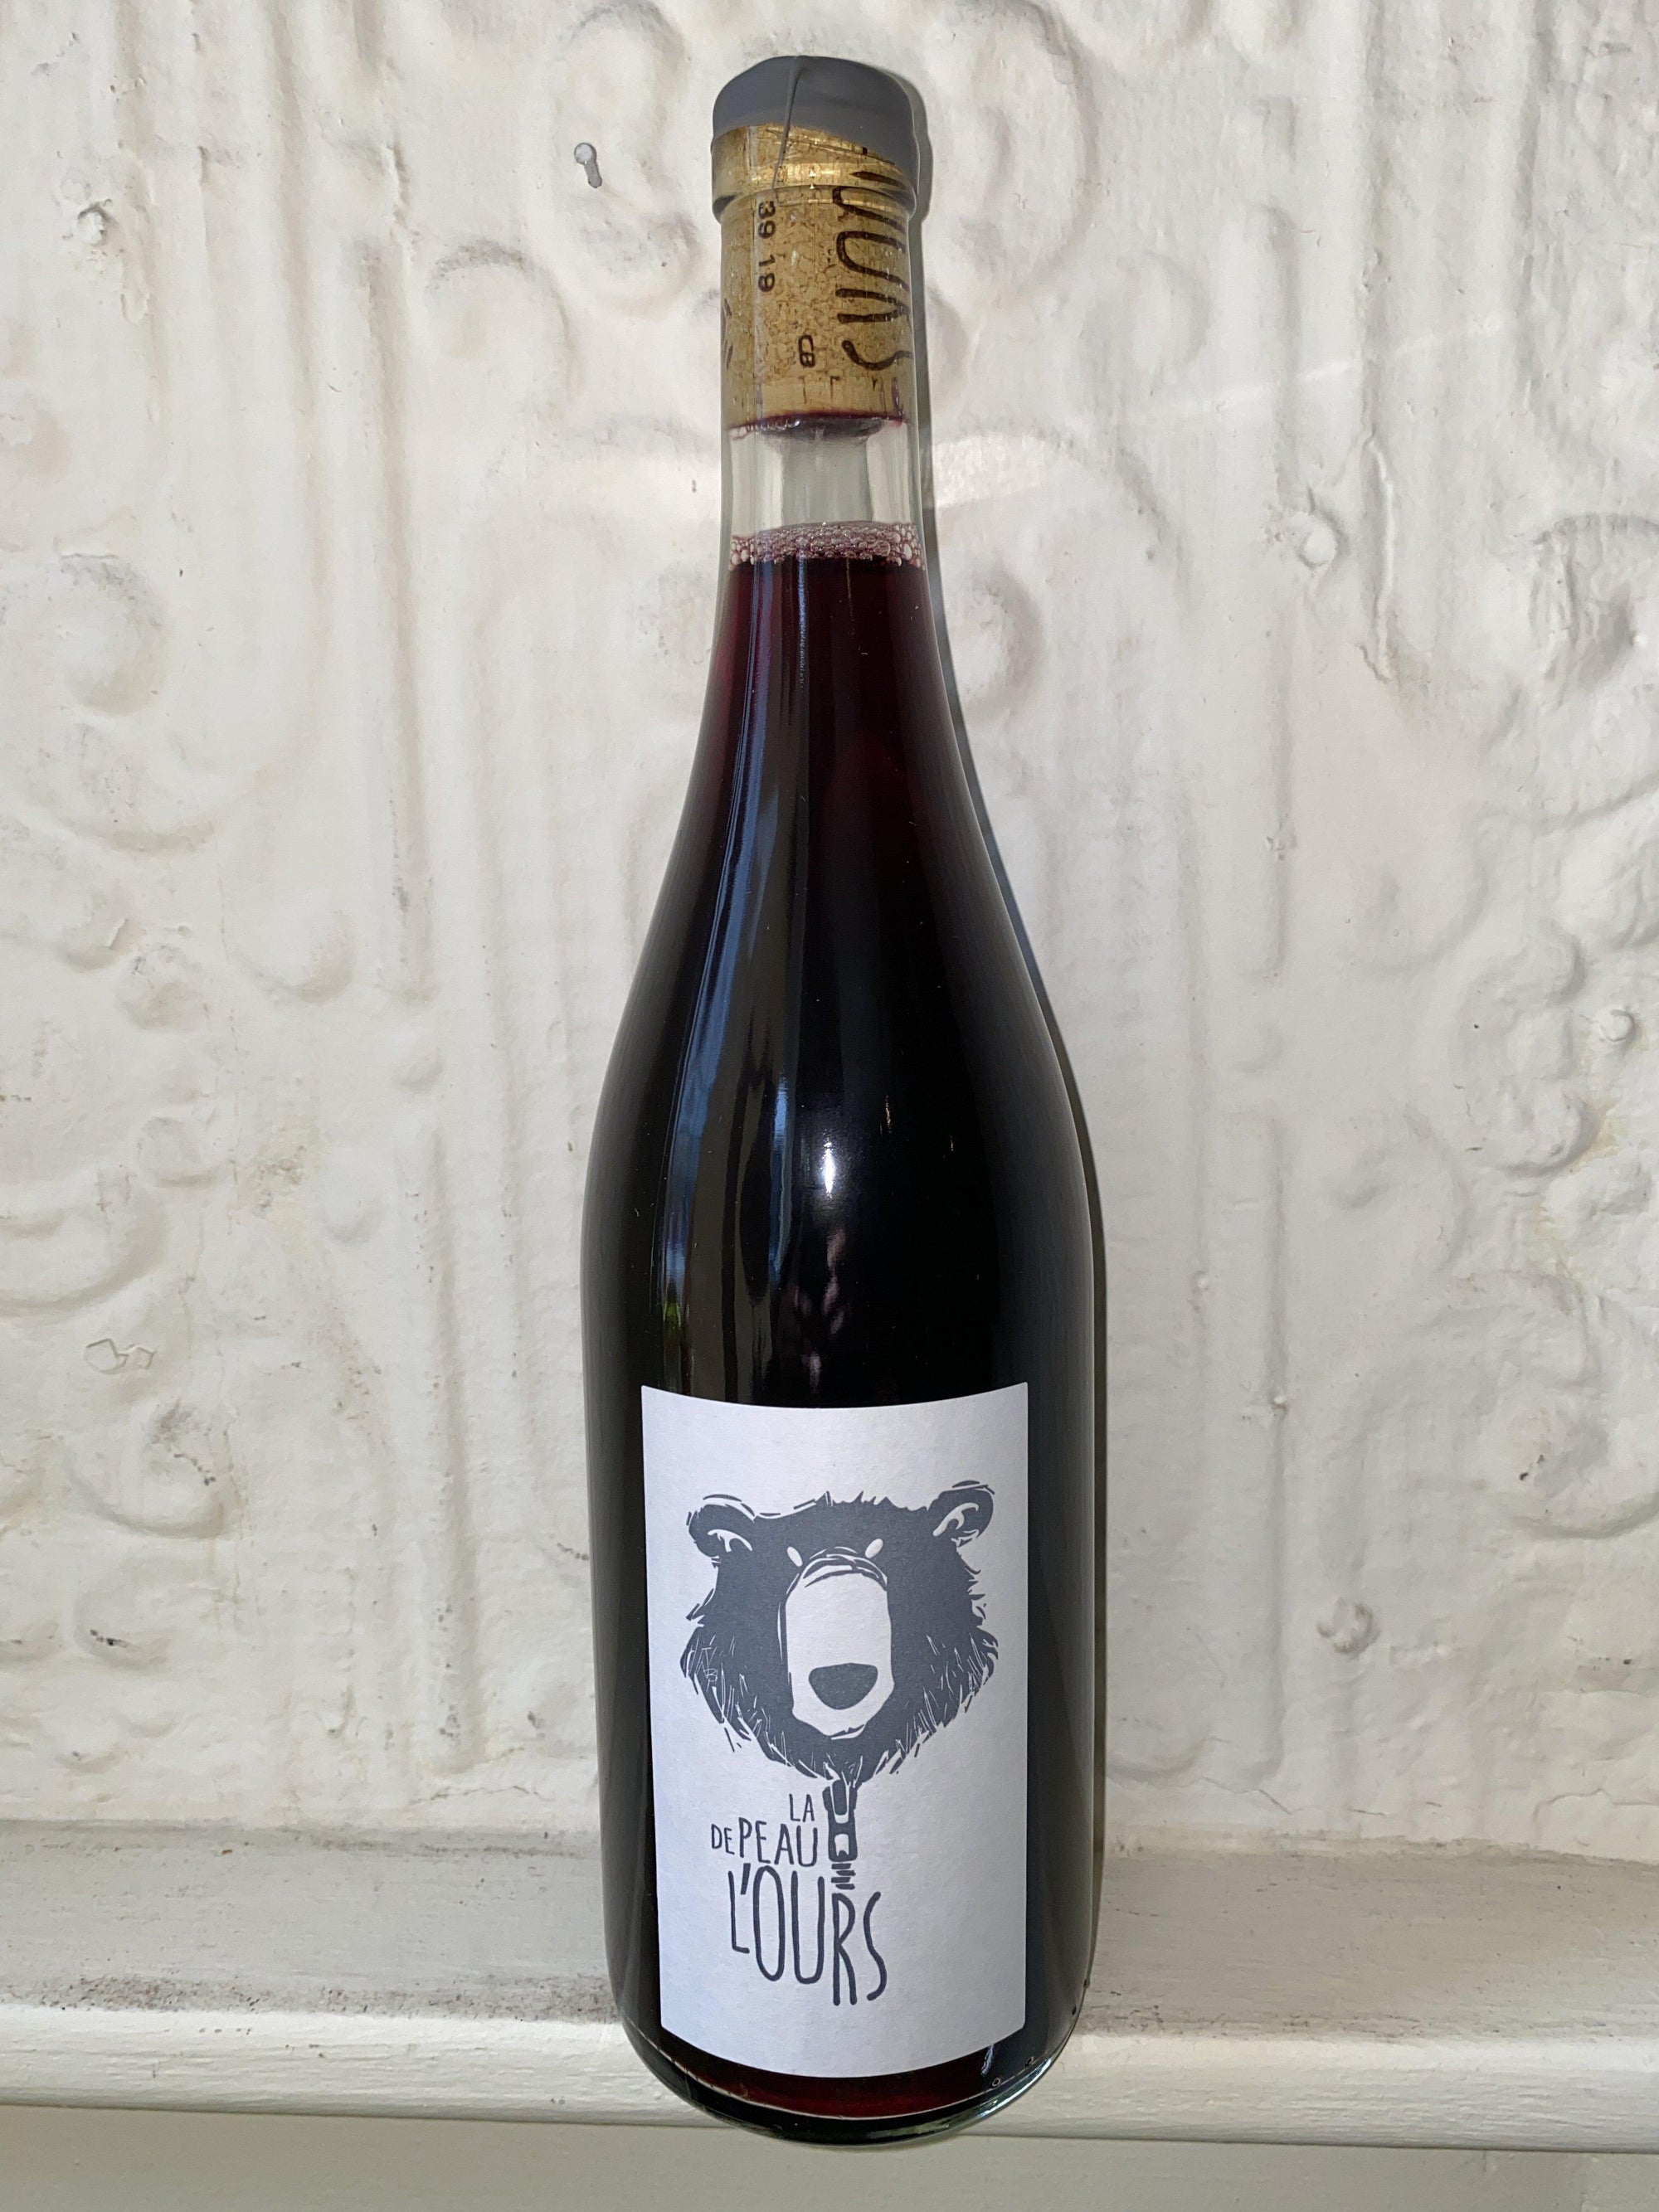 La Peau de L'Ours Chinon, Domaine de la Mariniere 2019 (Loire, France)-Wine-Bibber & Bell